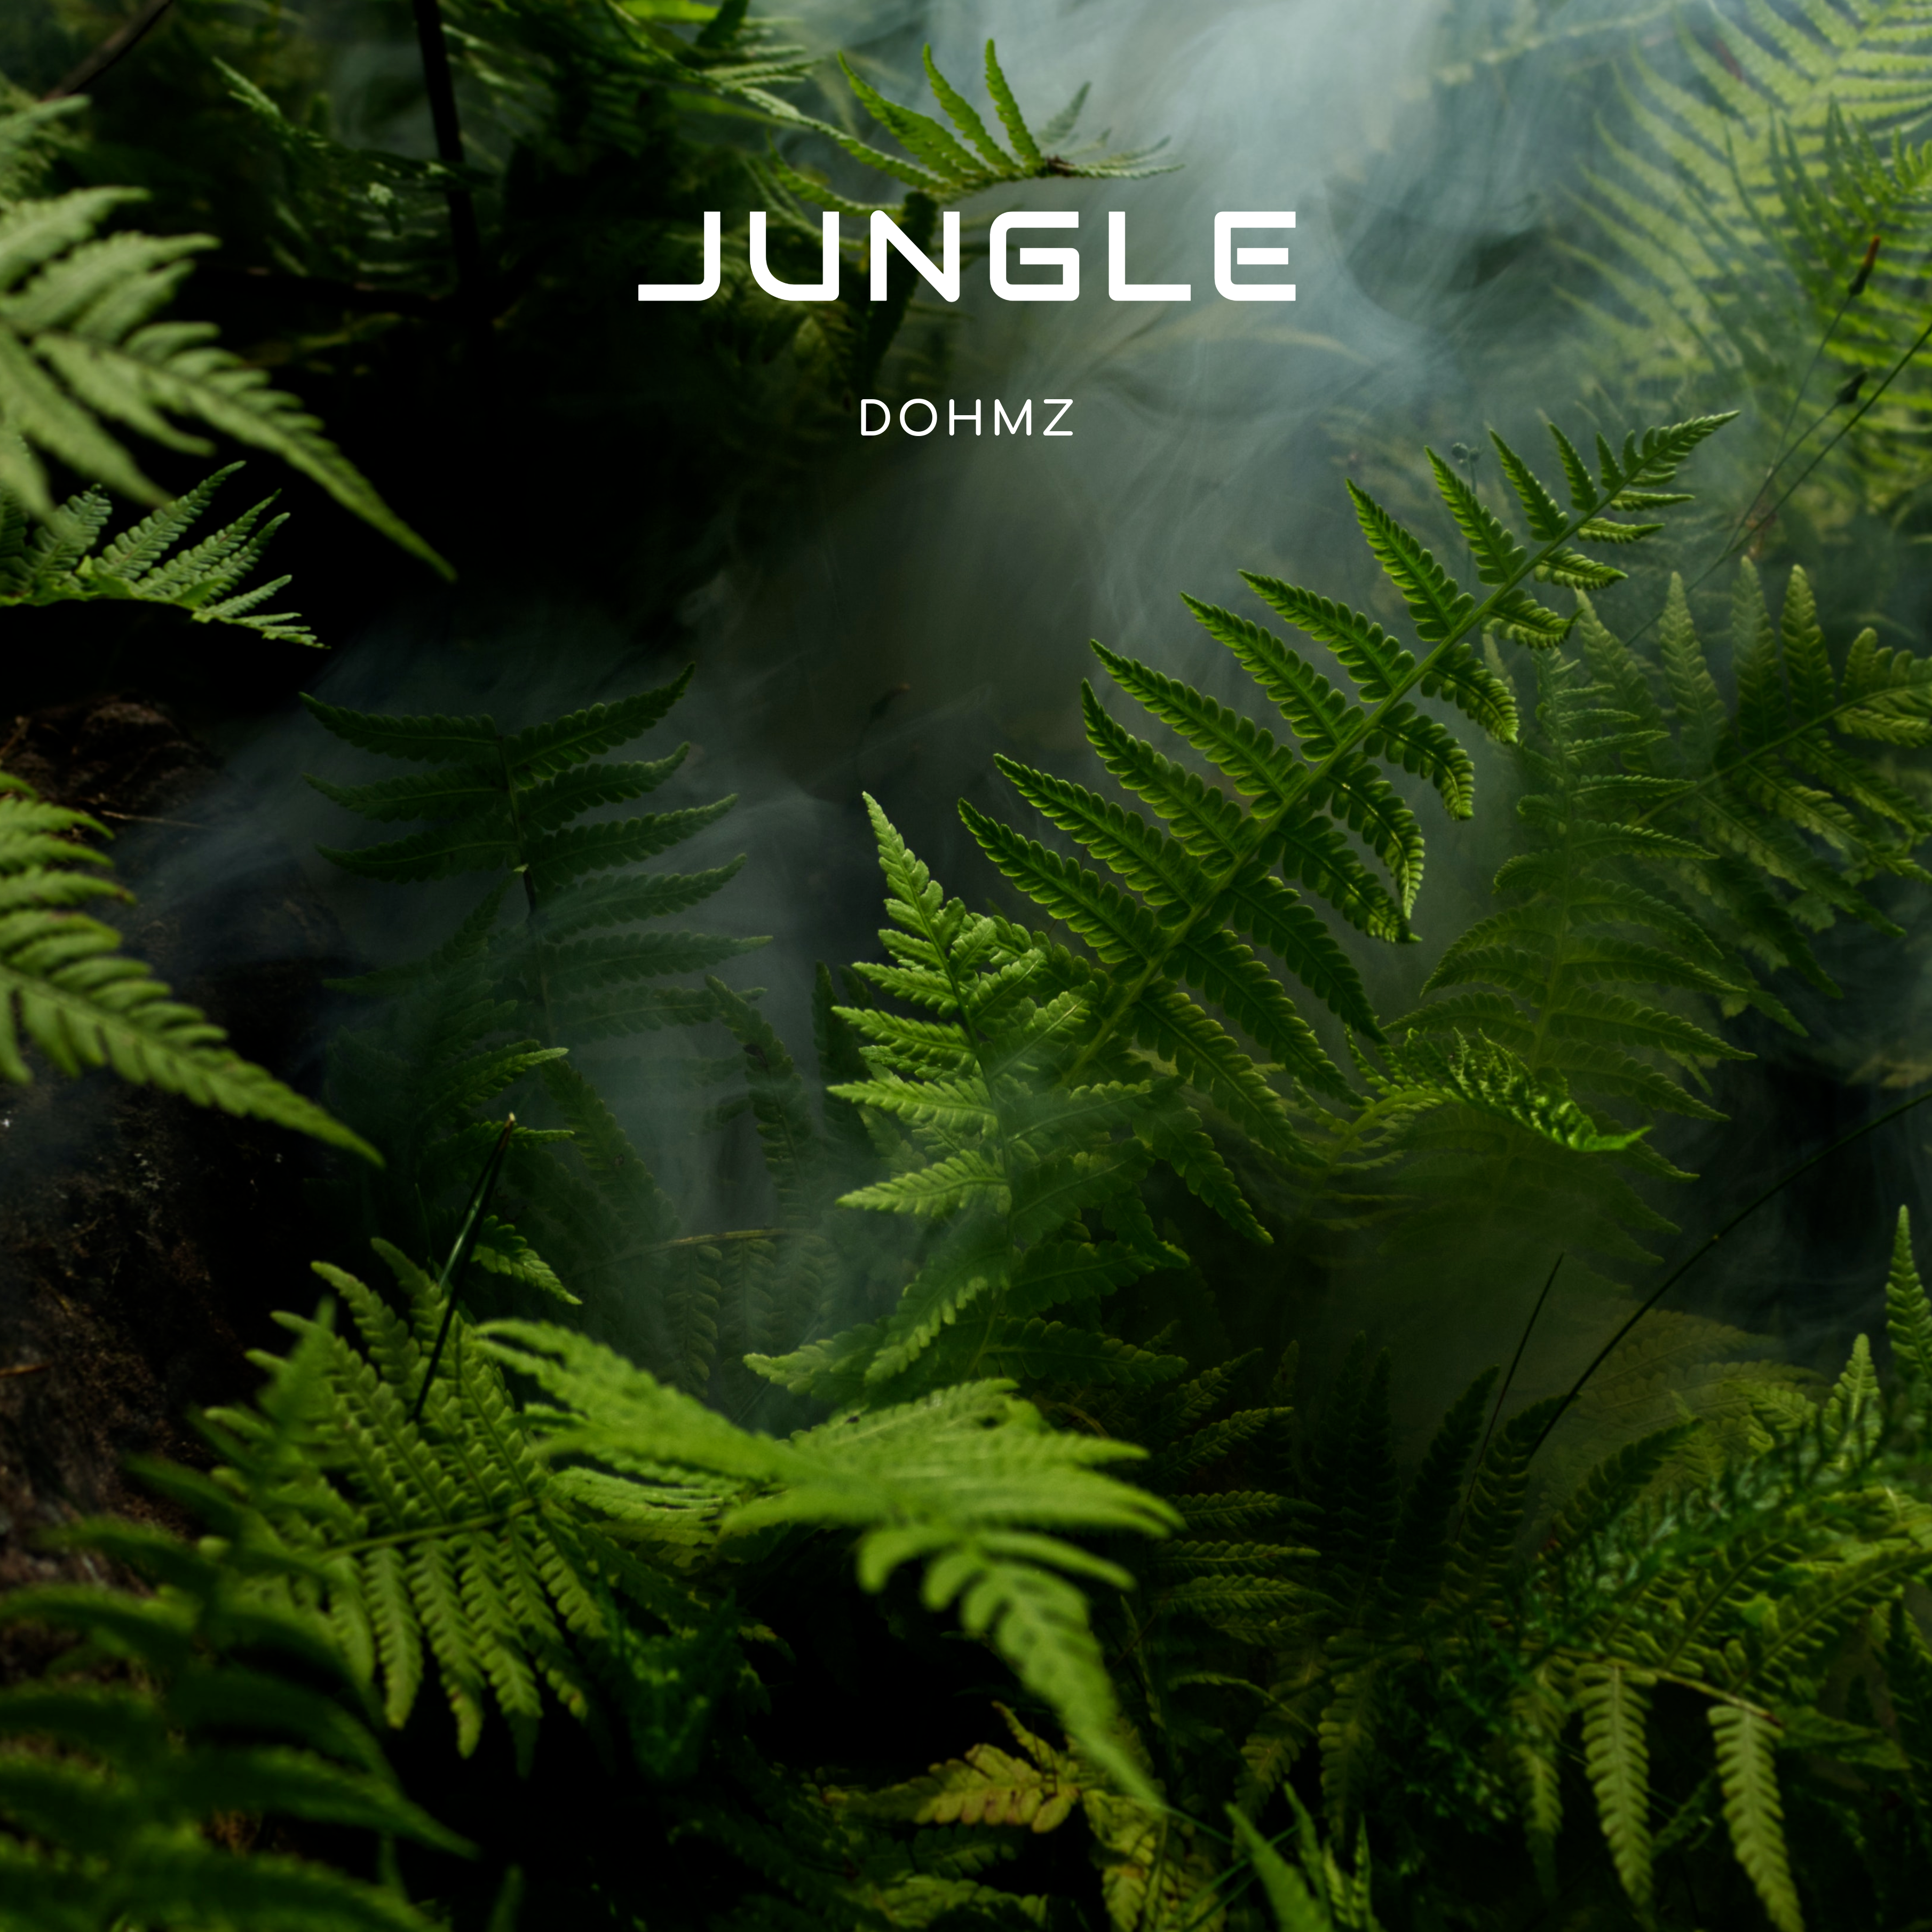 DOHMZ unveils new release Jungle